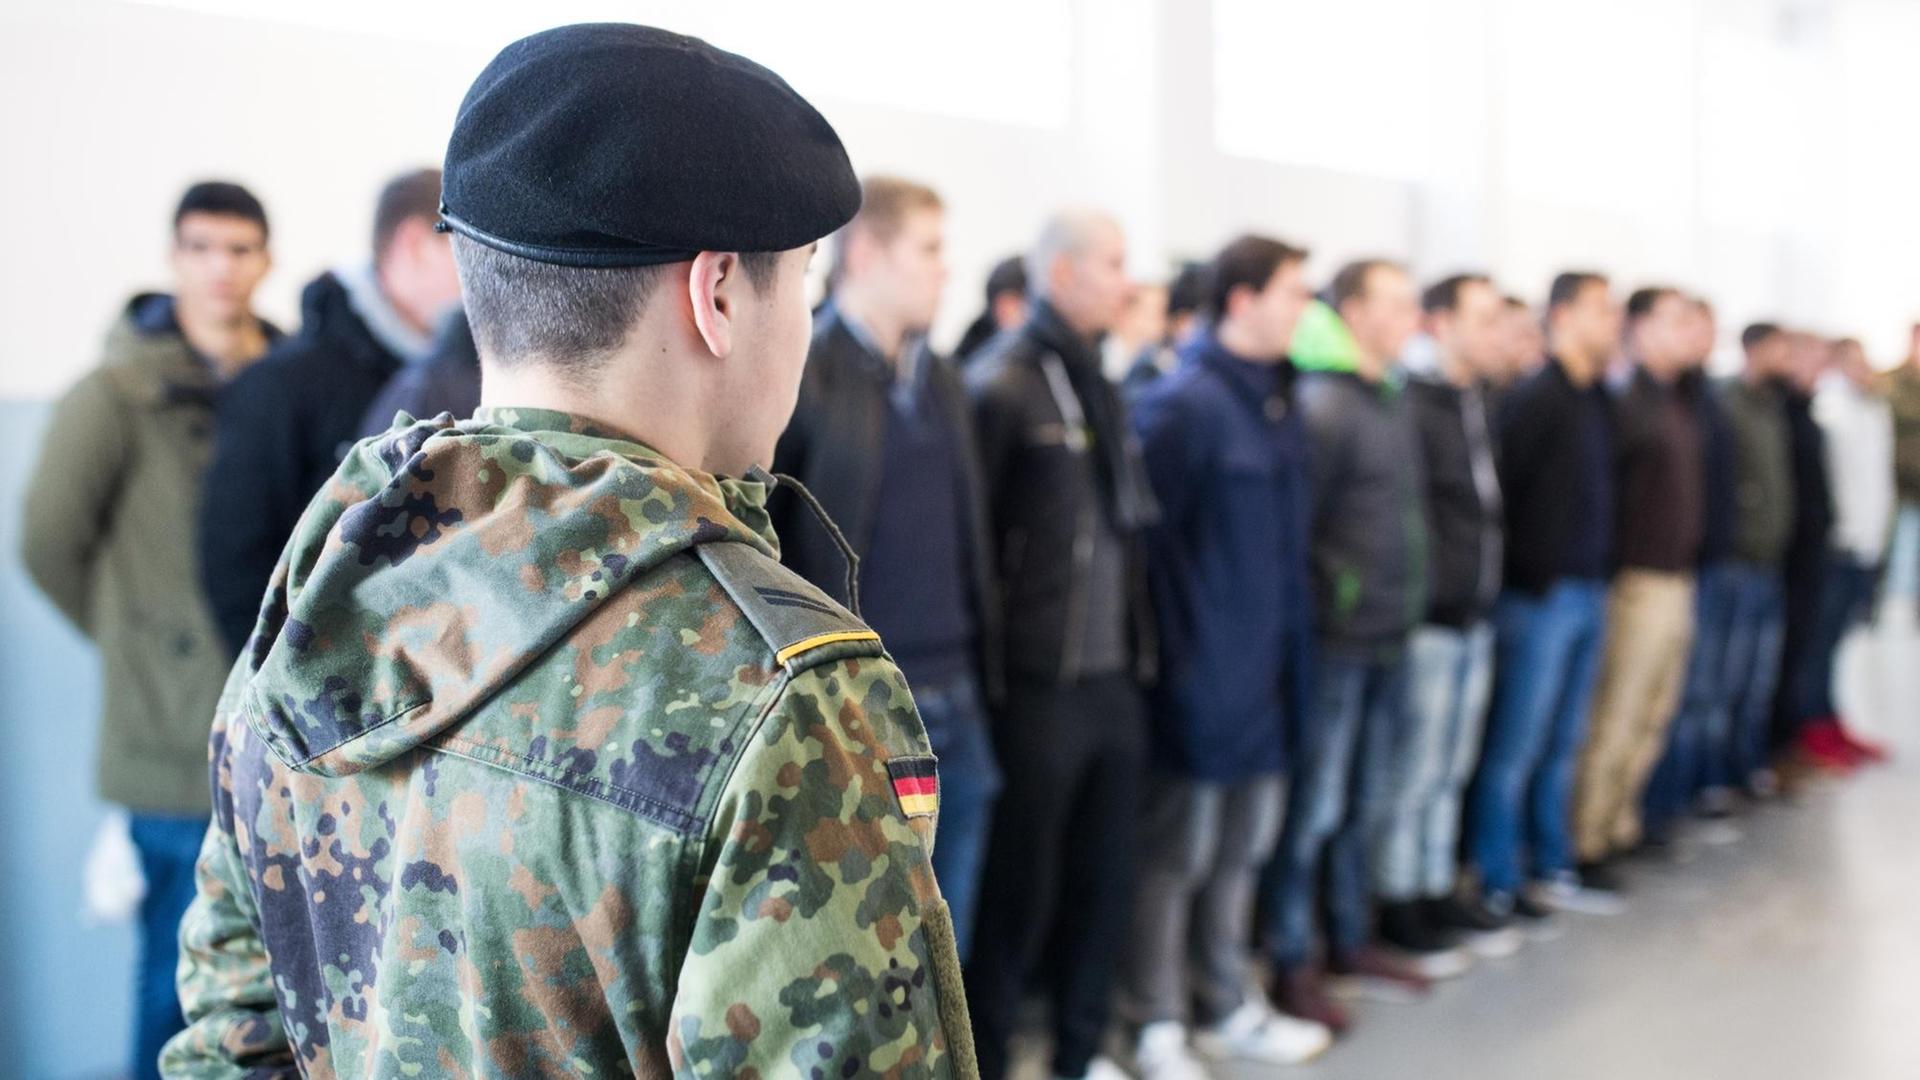 Bei der Bundeswehr gibt es immer mehr Minderjährige. Kritiker sprechen von "Kindersoldaten"